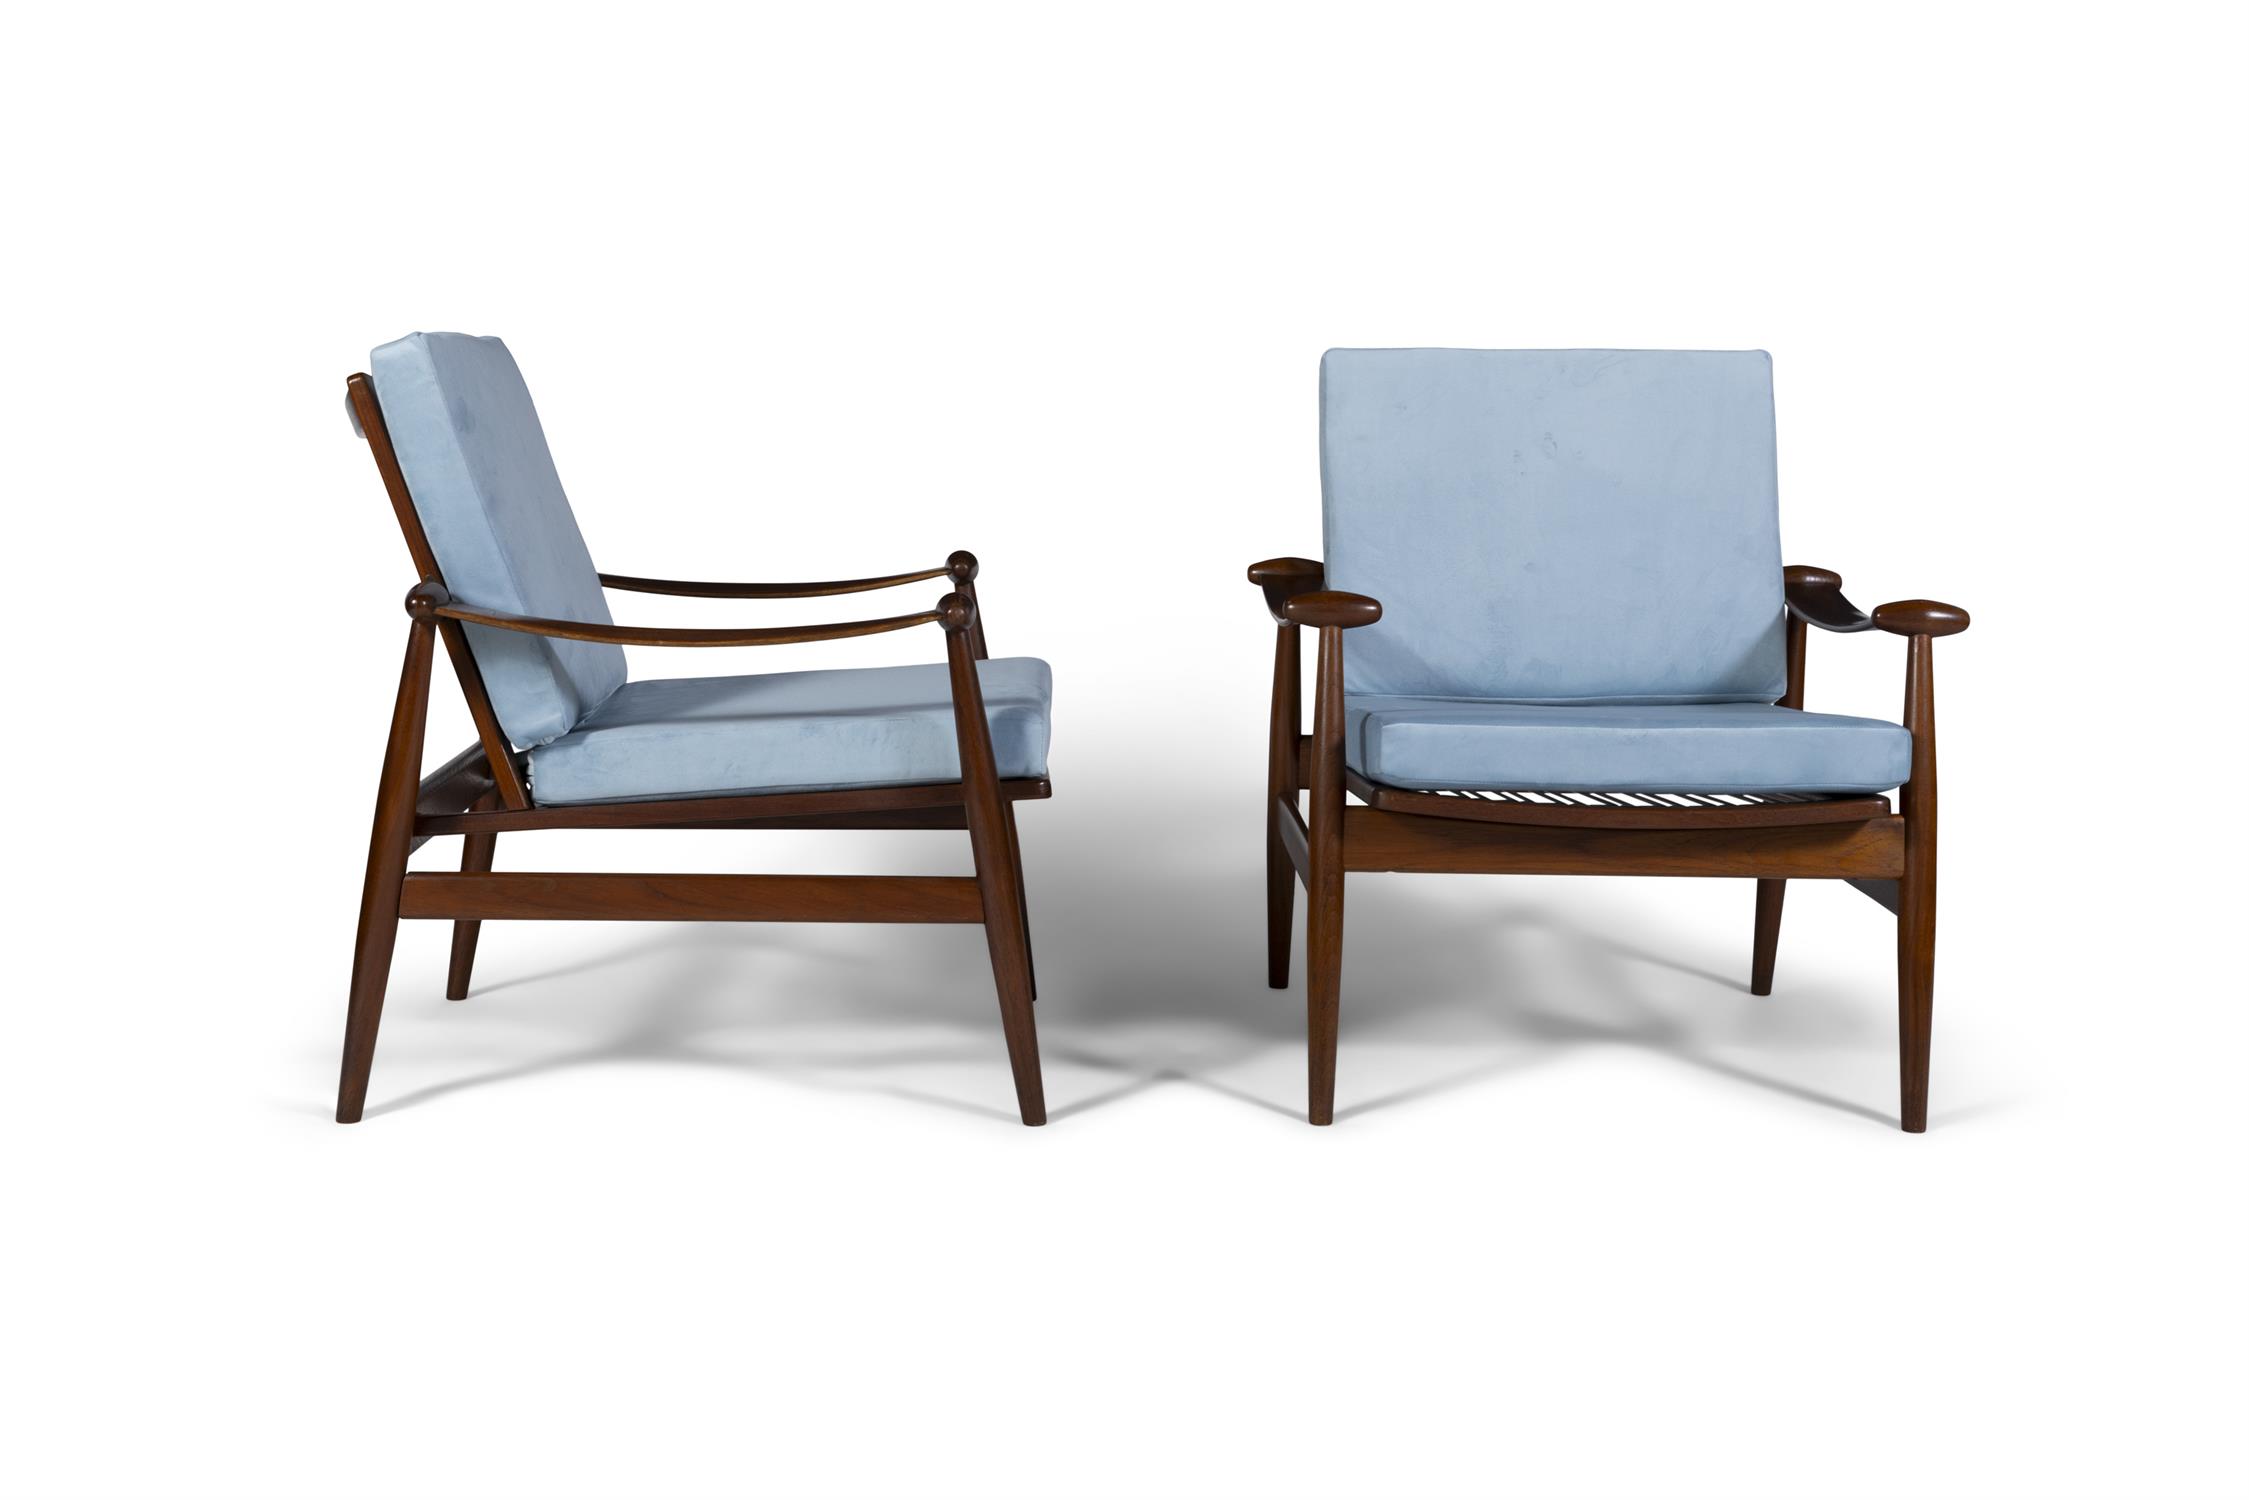 FINN JUHL (1912 - 1989) A pair of teak spade chairs by Finn Juhl. Denmark, c.1960. - Image 4 of 7